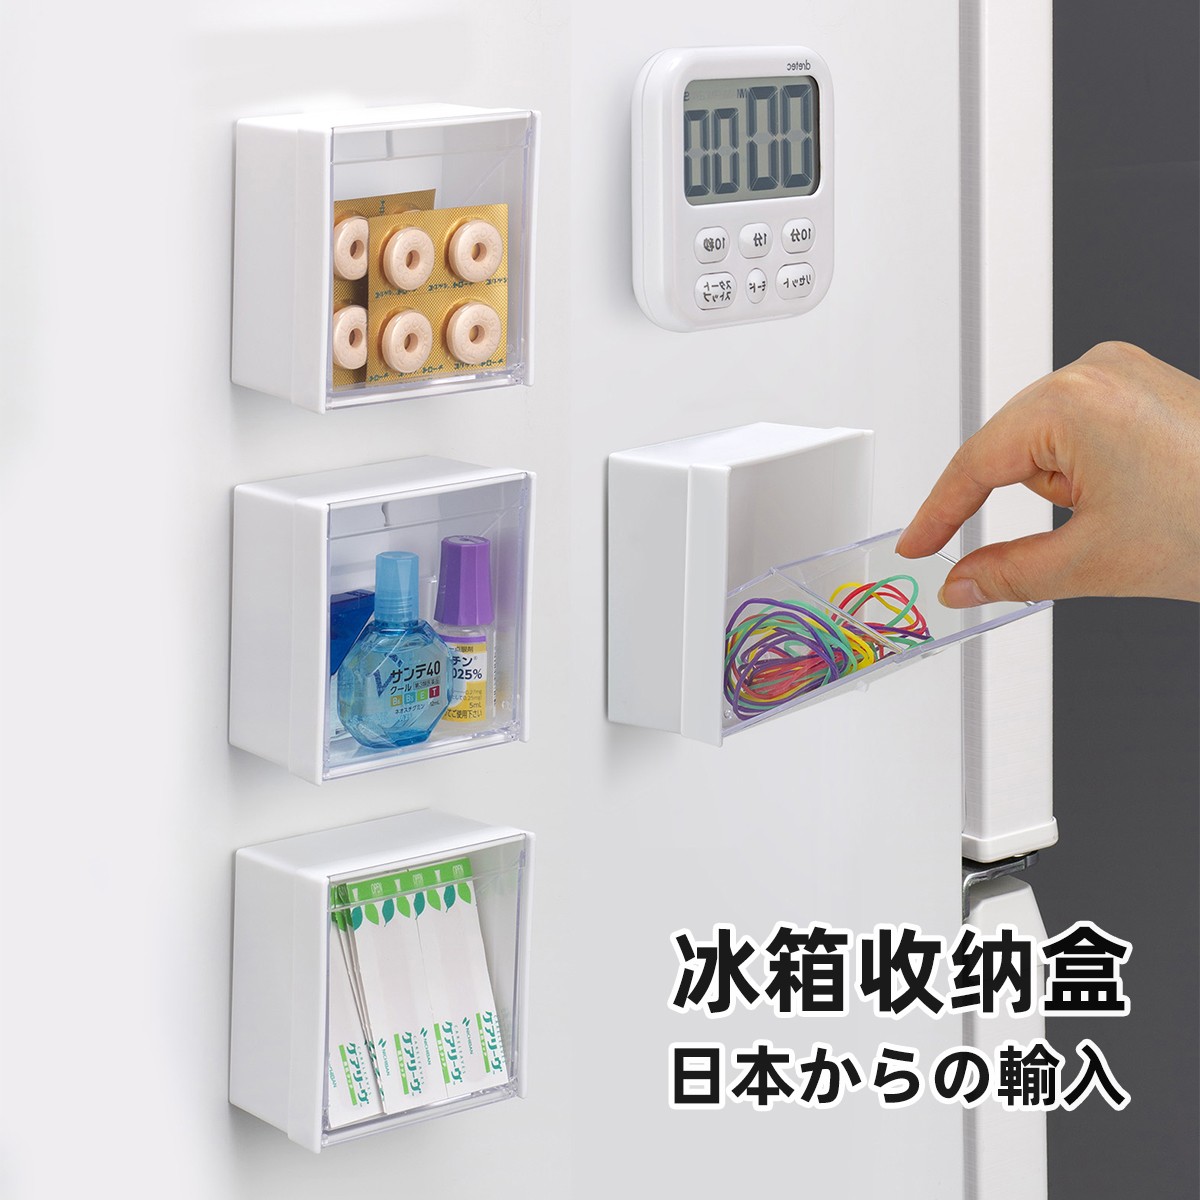 日本进口磁吸冰箱收纳盒学生杂物厨房小物置物篮磁铁筐免打孔挂架